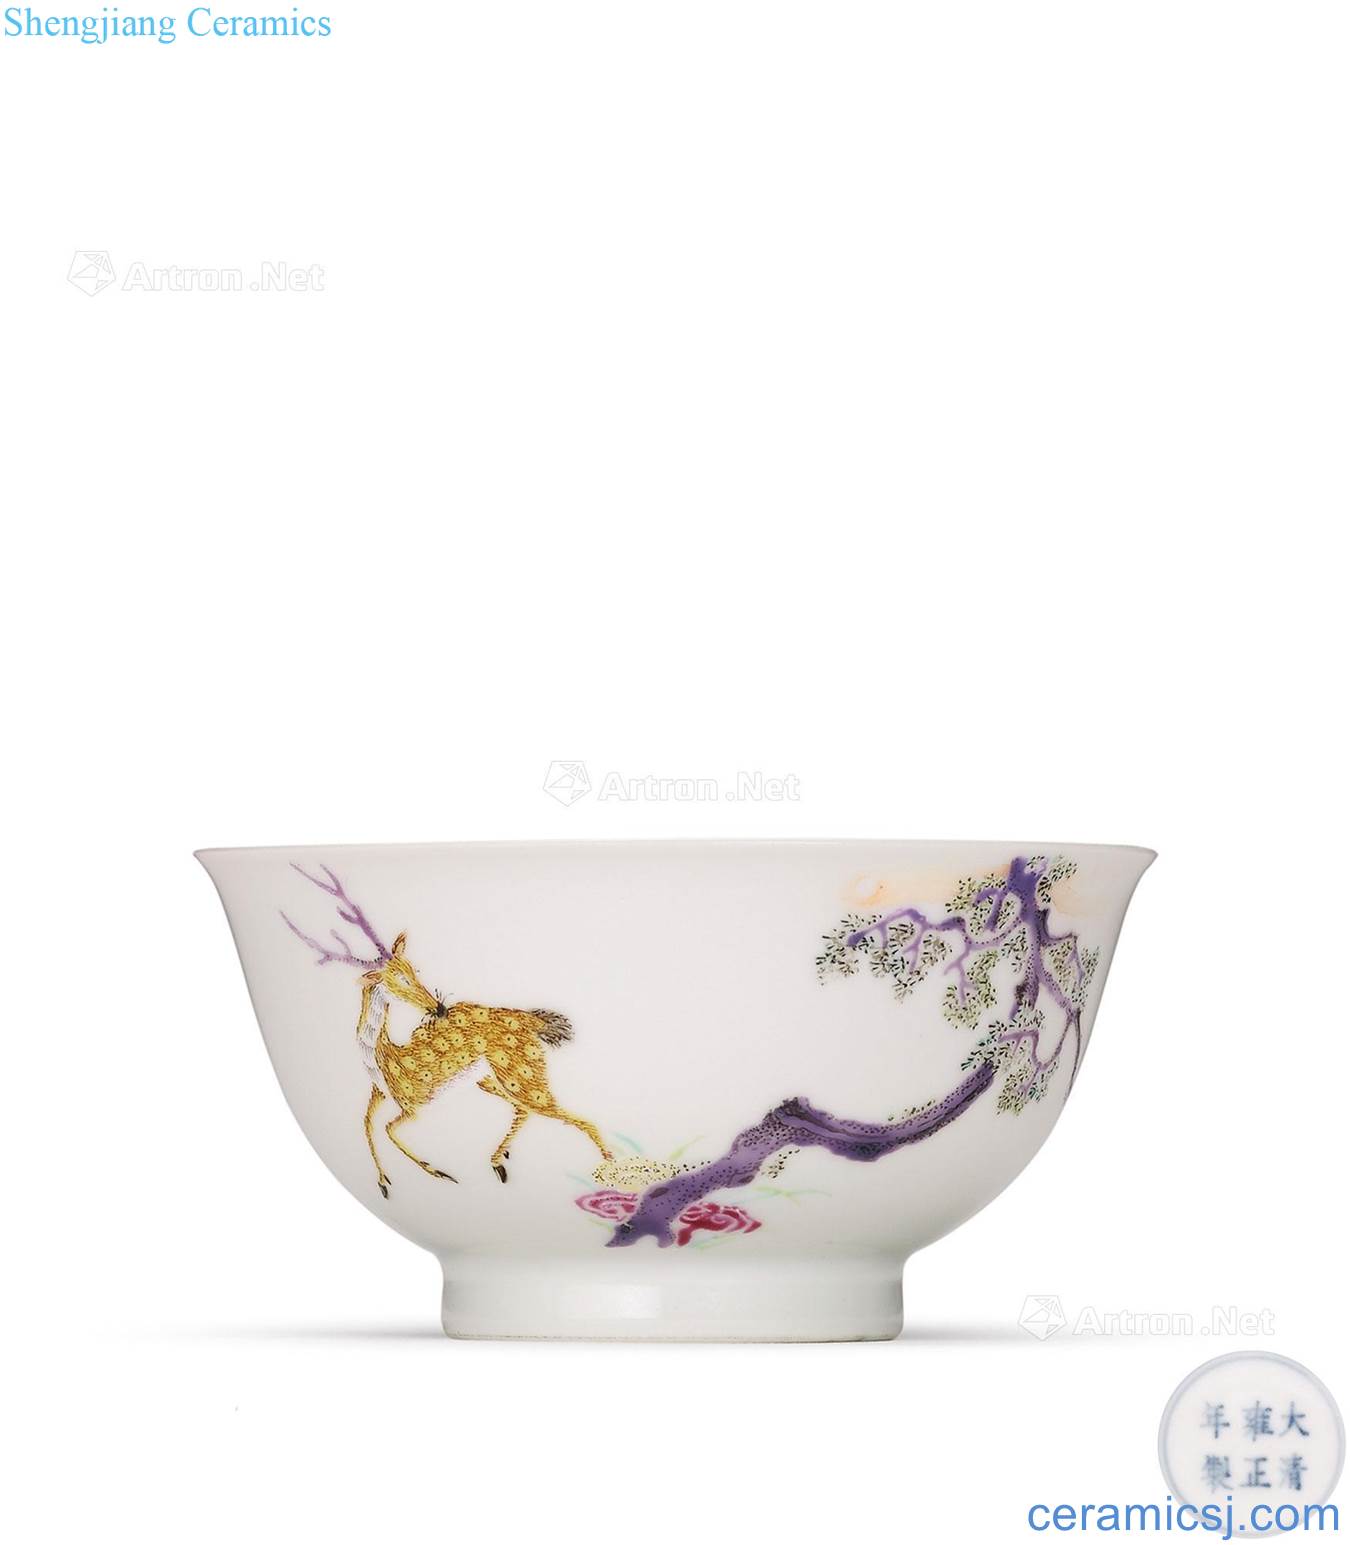 Qing yongzheng pastel deer green-splashed bowls